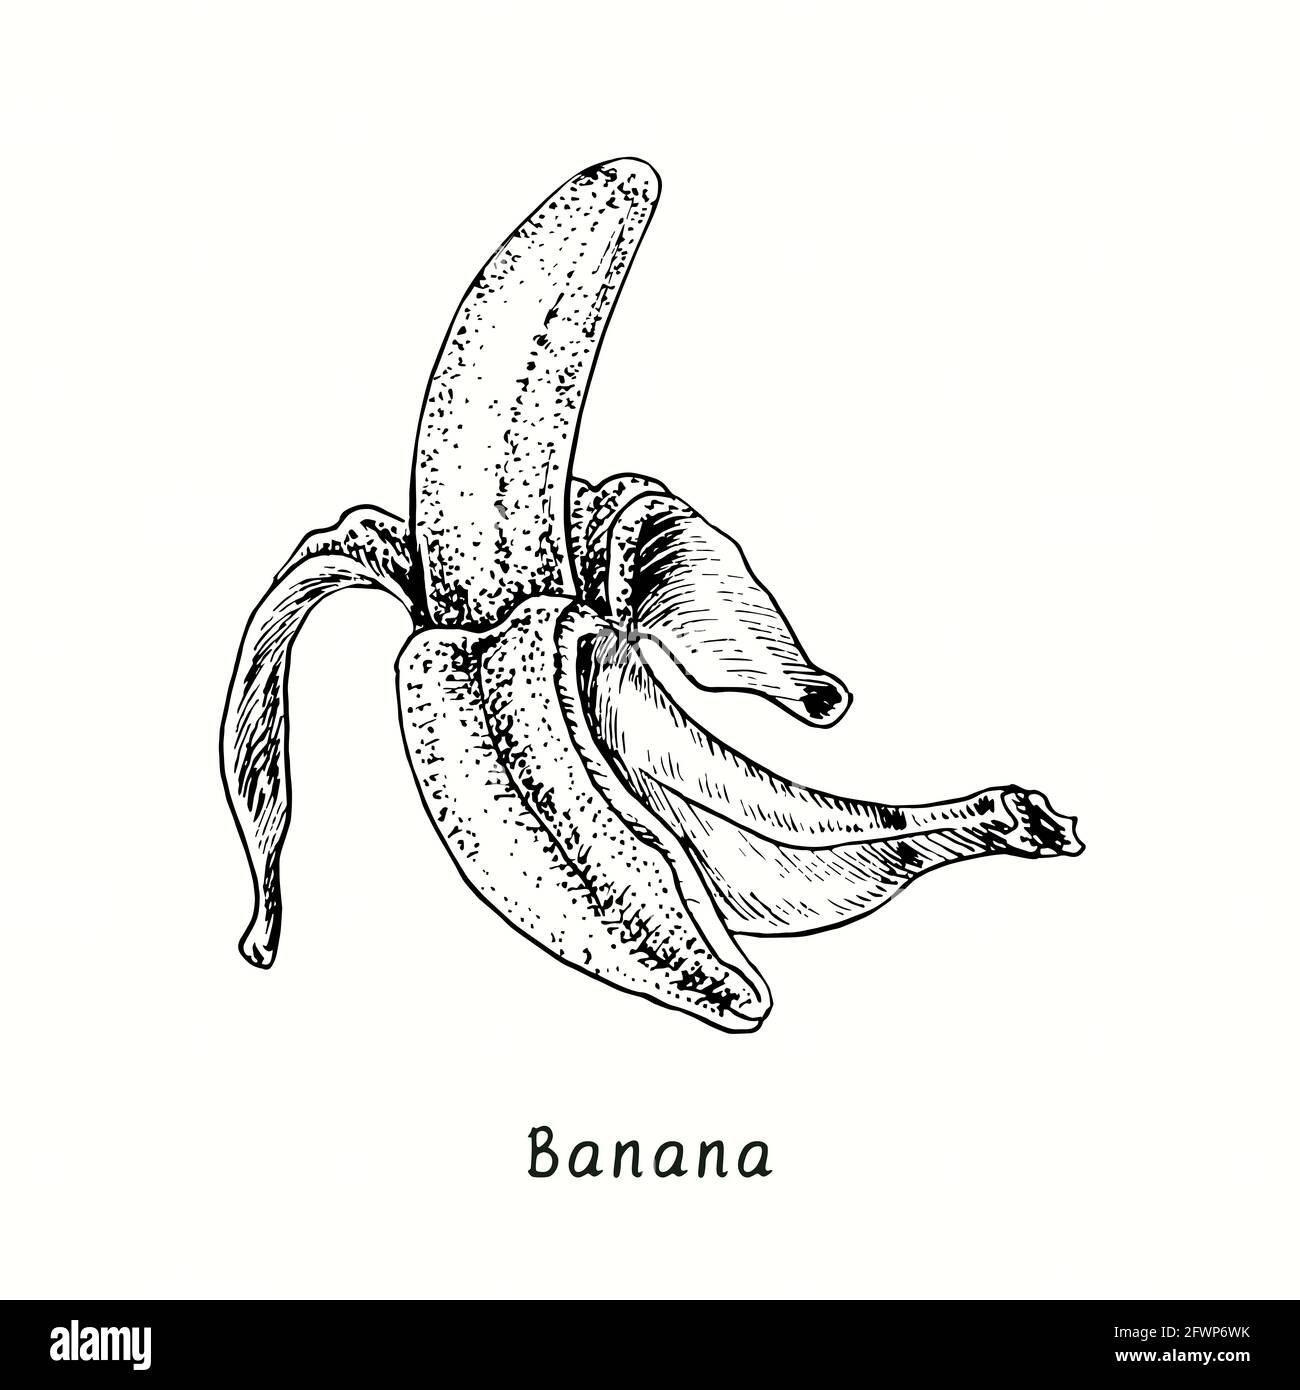 Banana Pencil Drawing Print A5 / A4 - Etsy